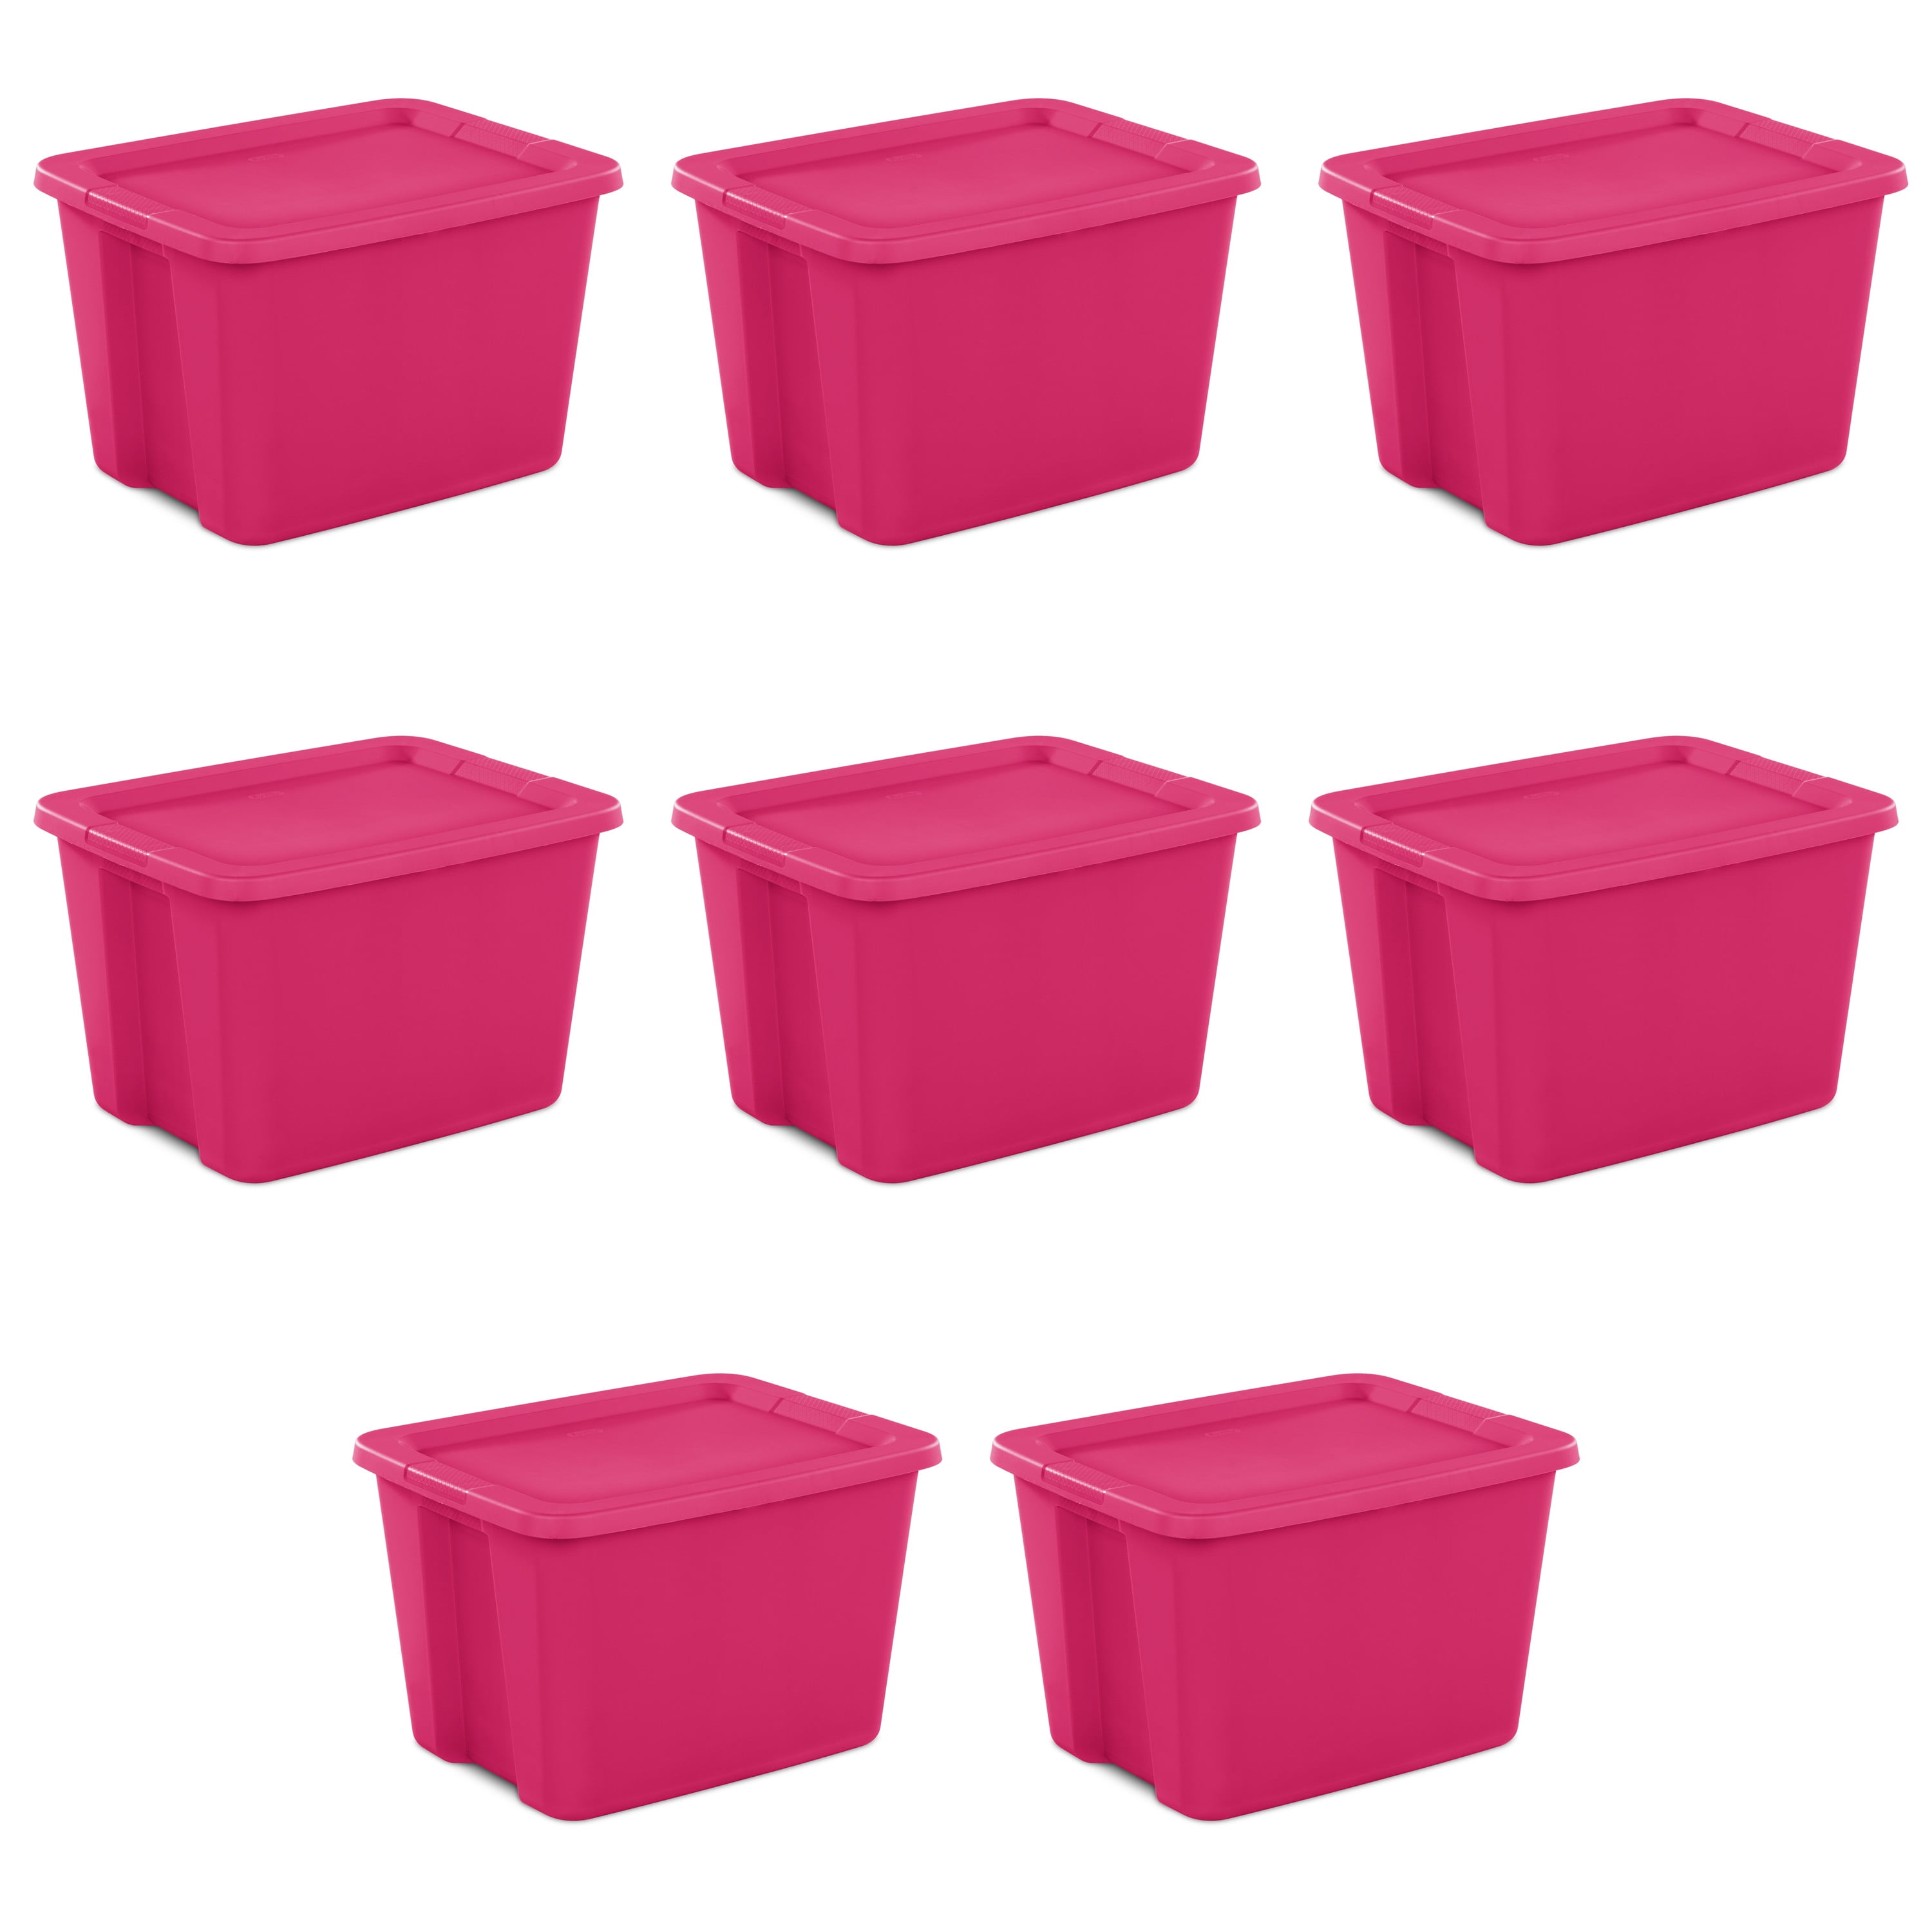 Sterilite 18 Gallon Tote Box Plastic, Fuchsia Burst, Set of 8, Pink